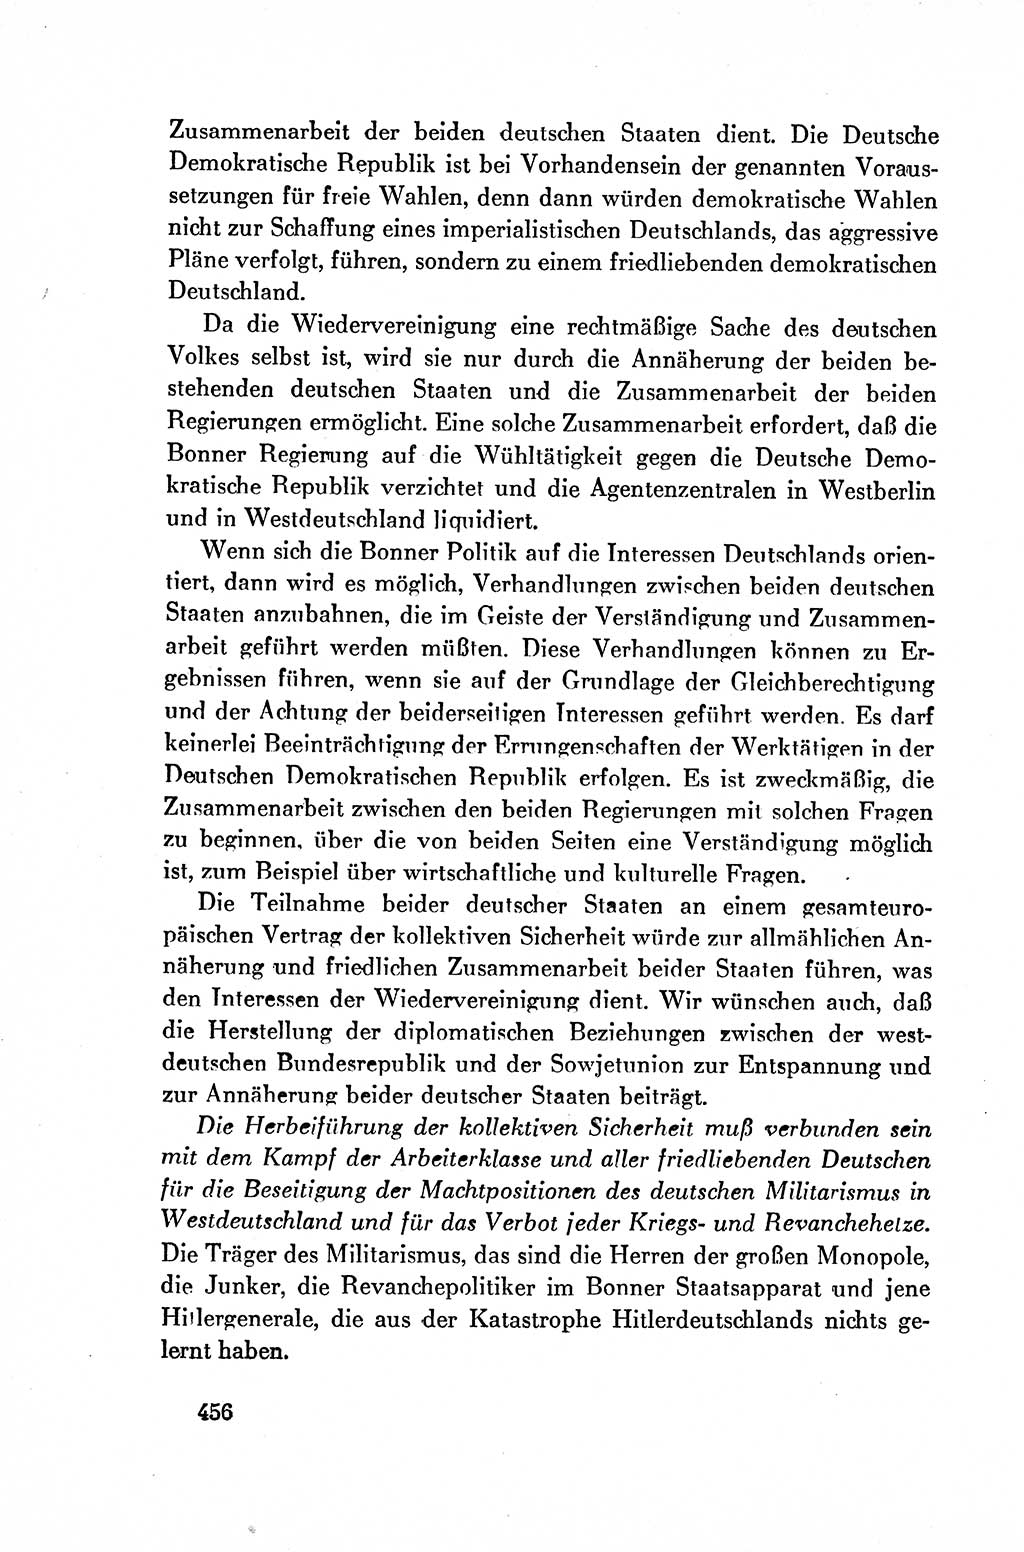 Dokumente der Sozialistischen Einheitspartei Deutschlands (SED) [Deutsche Demokratische Republik (DDR)] 1954-1955, Seite 456 (Dok. SED DDR 1954-1955, S. 456)